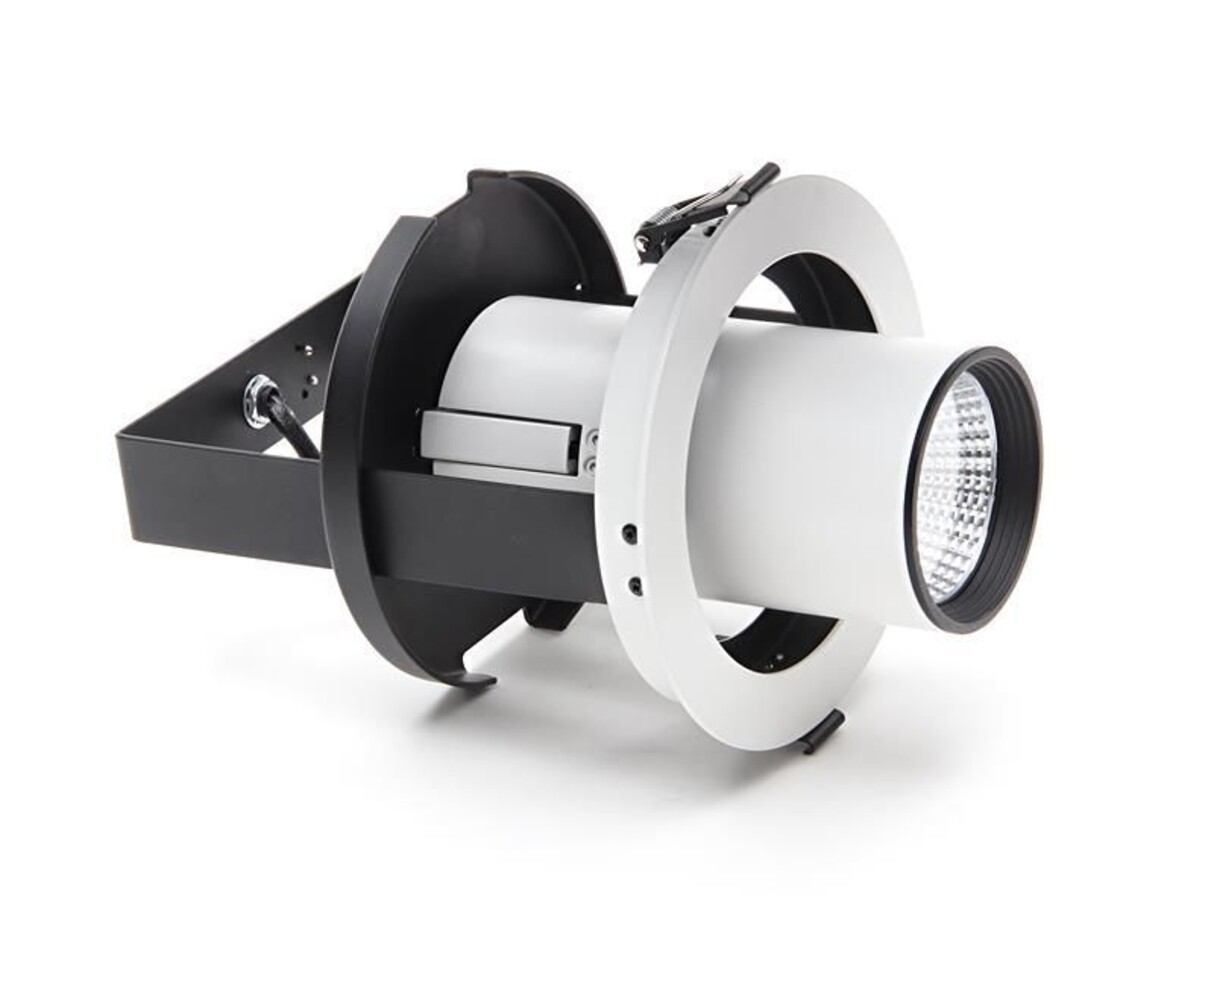 Beeindruckender Deko-Light Deckenstrahler & Spot mit hoher Leuchtkraft, ideal für jede Raumbeleuchtung